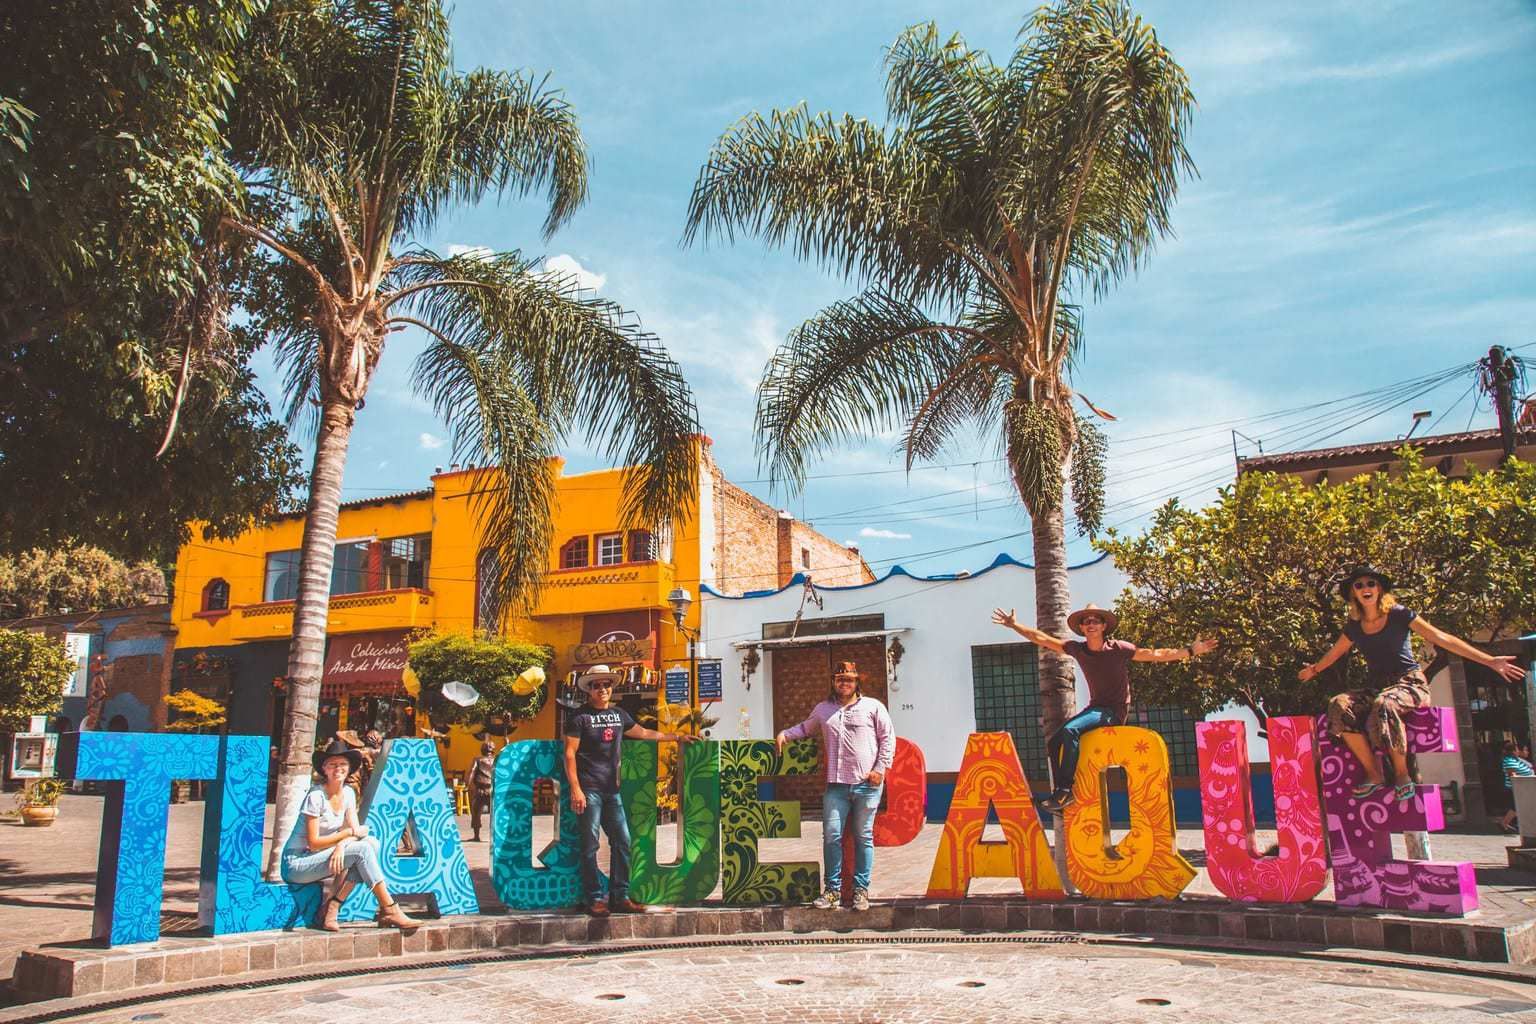 Tourists posing on Tlaquepaque letras in Mexico